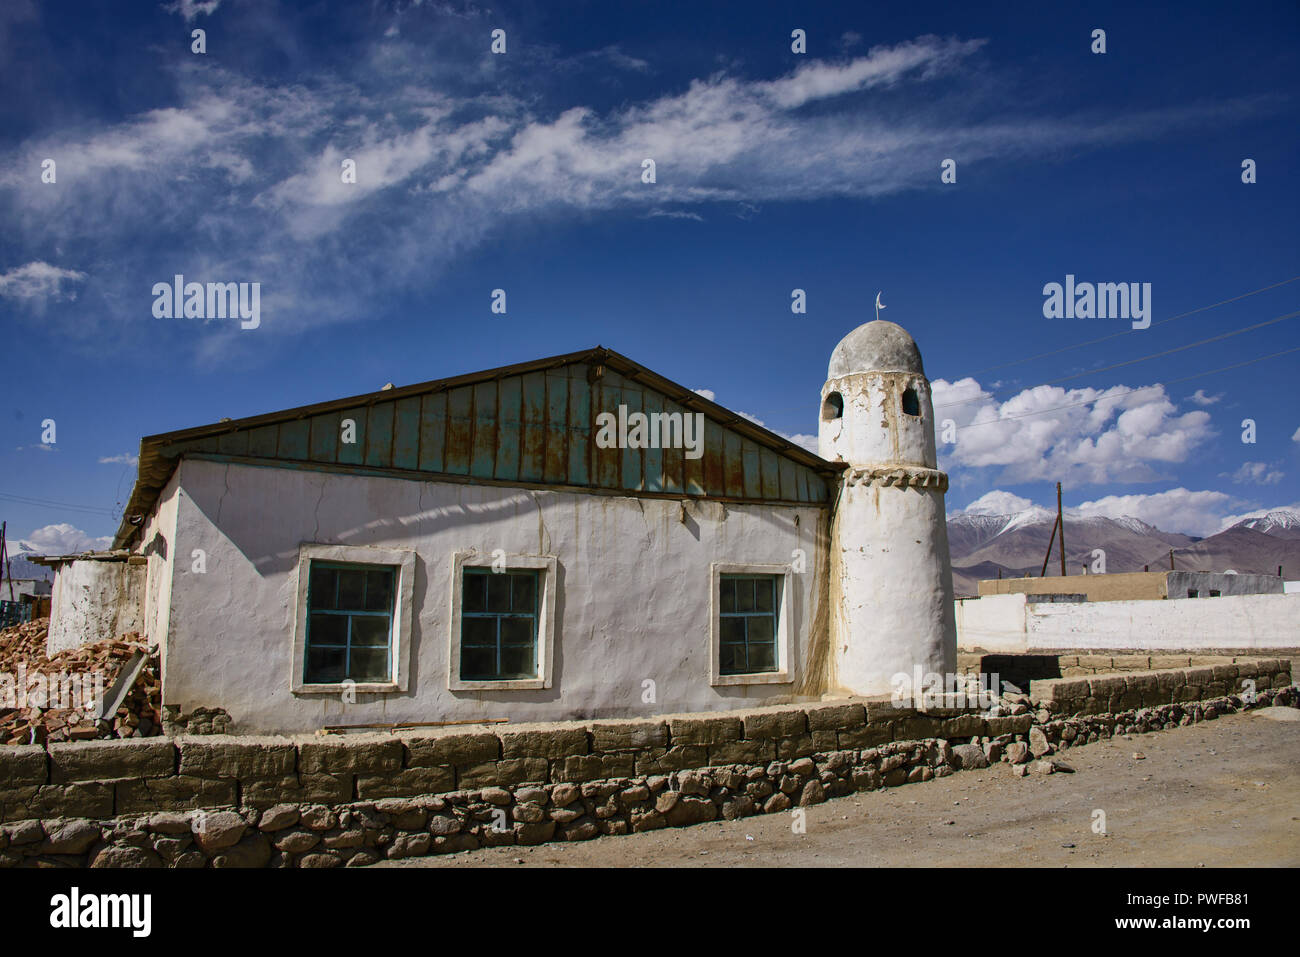 Mosque in the high altitude lake village of Karakul, Tajikistan Stock Photo